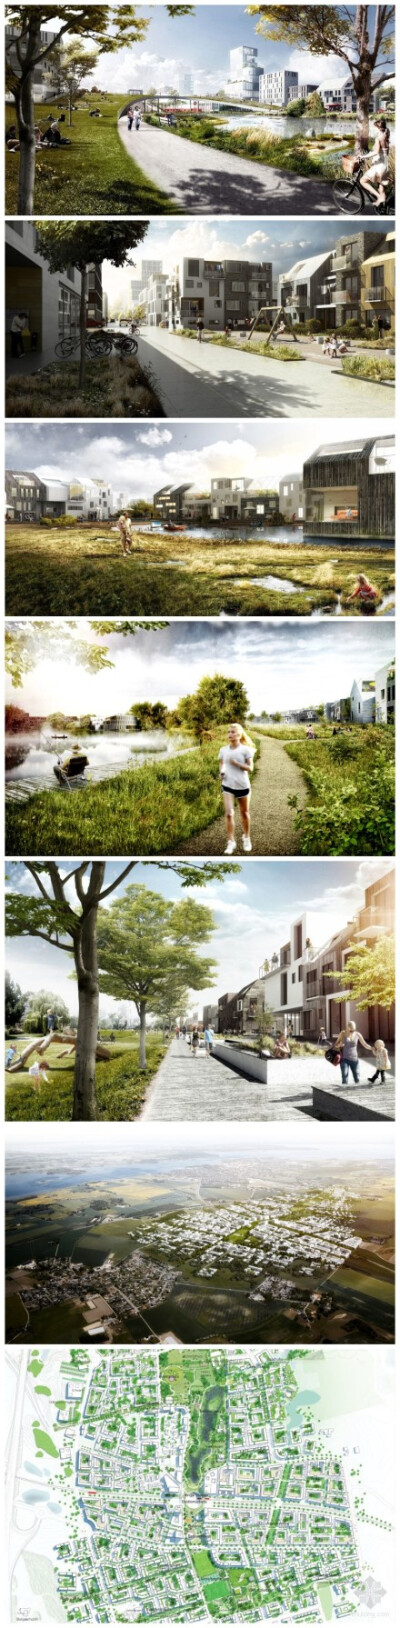 离哥本哈根仅30分钟车程的维格将被规划为一座如画风景中簇拥的新城。这项规划涉及近3.5平方公里的土地，这使得维格成为丹麦最大的发展项目。维格的生活紧紧围绕着中央公园——“绿色之心”，这里将两片世界整合在了…